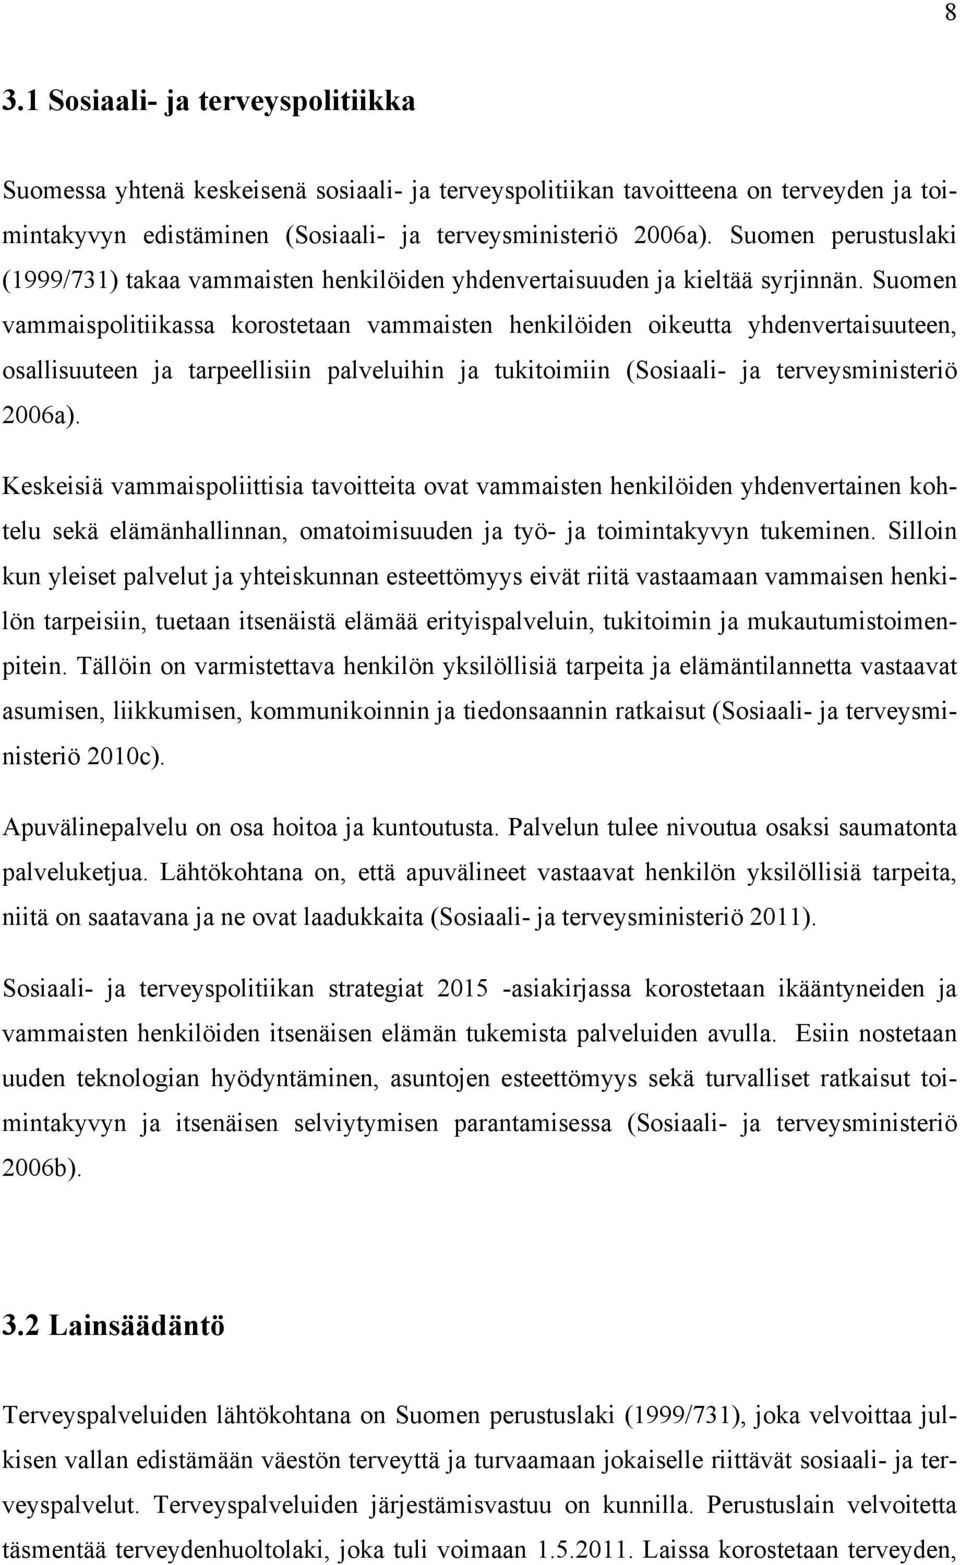 Suomen vammaispolitiikassa korostetaan vammaisten henkilöiden oikeutta yhdenvertaisuuteen, osallisuuteen ja tarpeellisiin palveluihin ja tukitoimiin (Sosiaali- ja terveysministeriö 2006a).